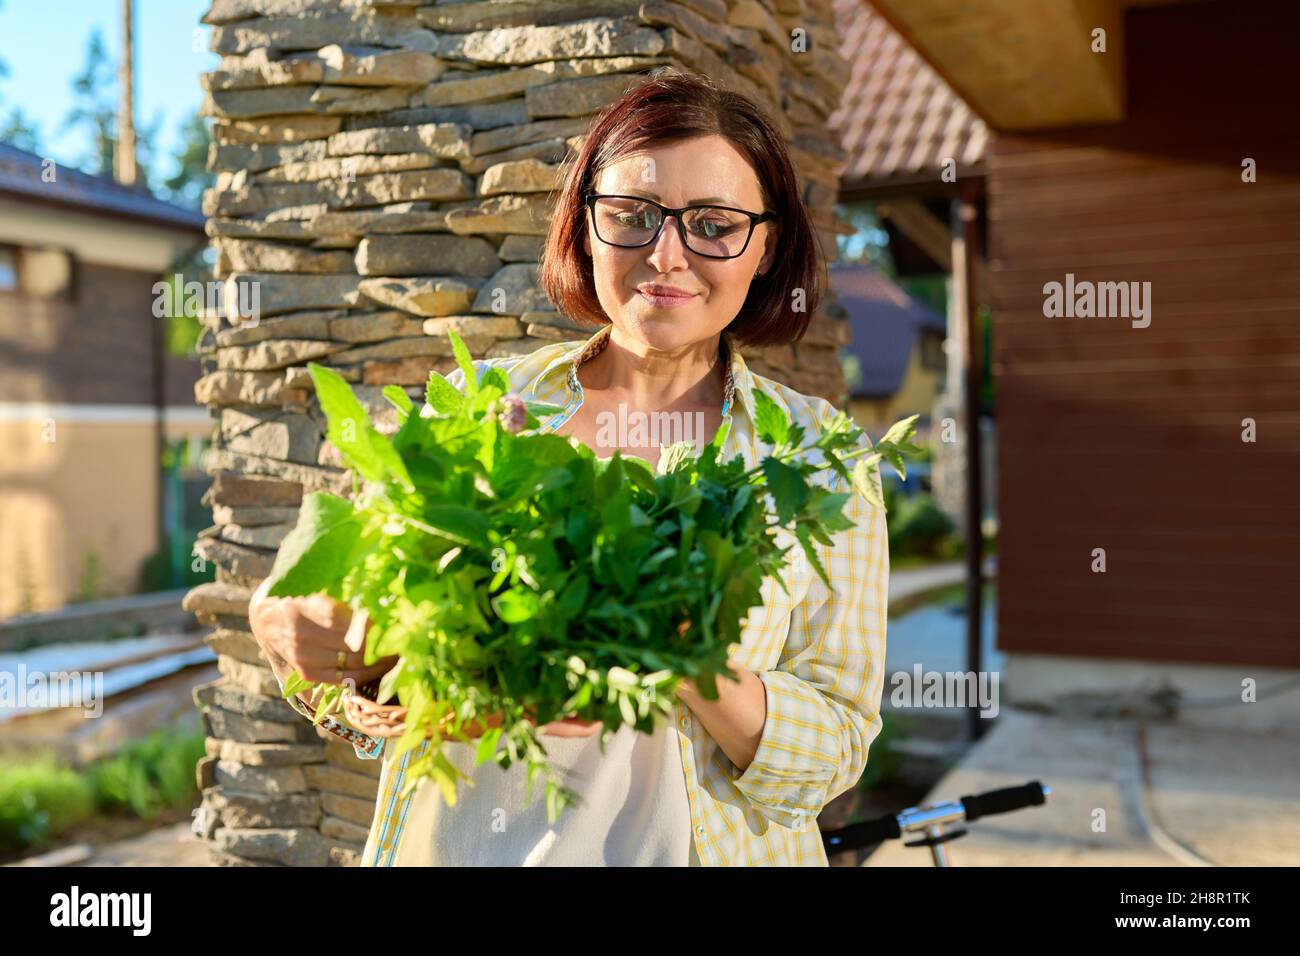 Mujer en el jardín que sostiene la cesta con la cosecha recién recogida de hierbas aromáticas picante verde Foto de stock